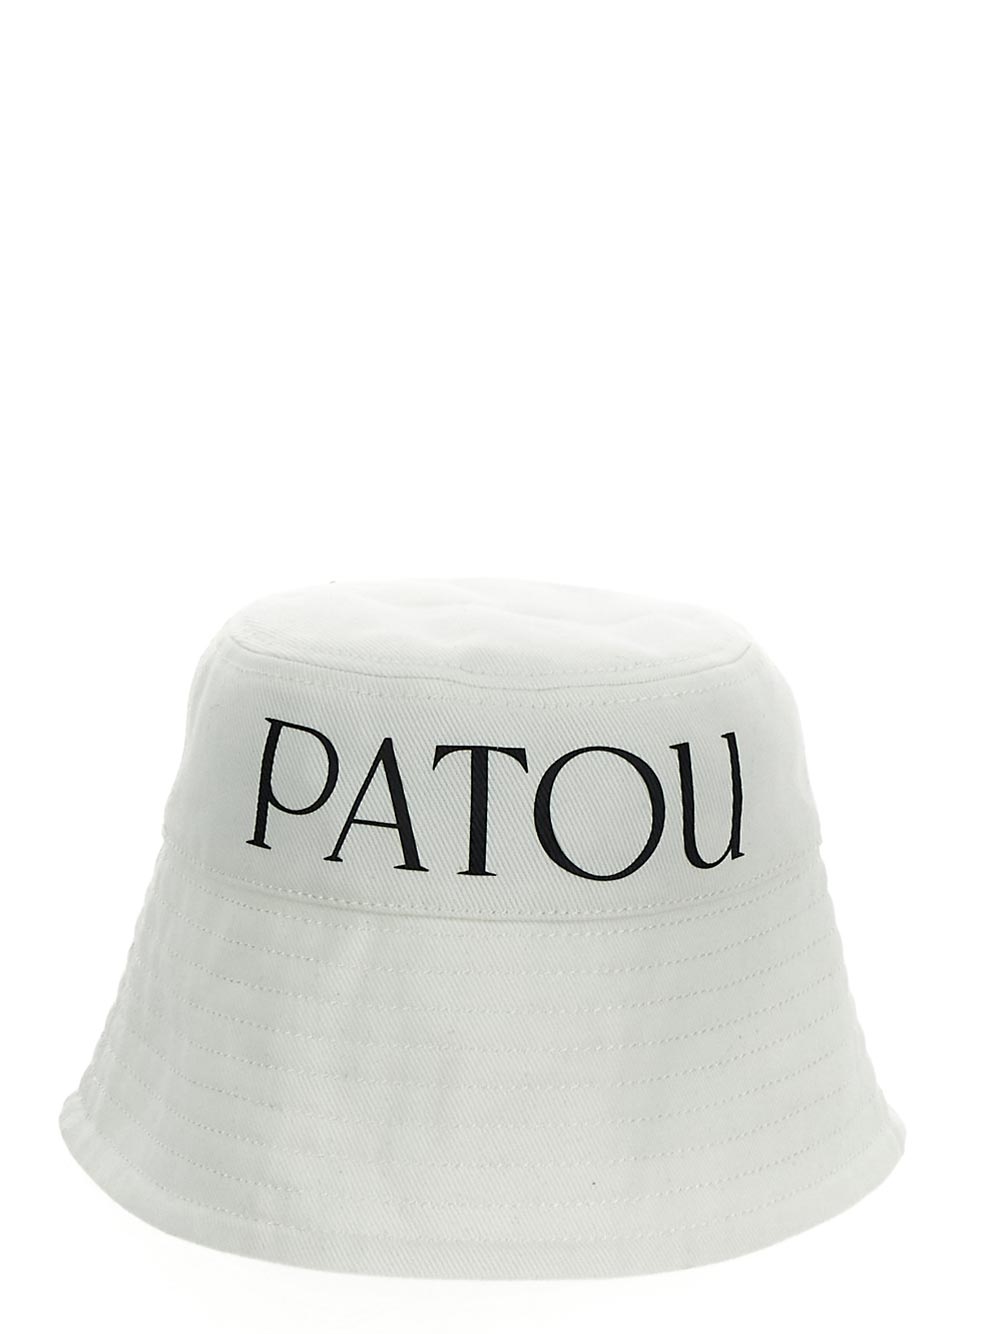 Patou PATOU Hat white AC0270132001W